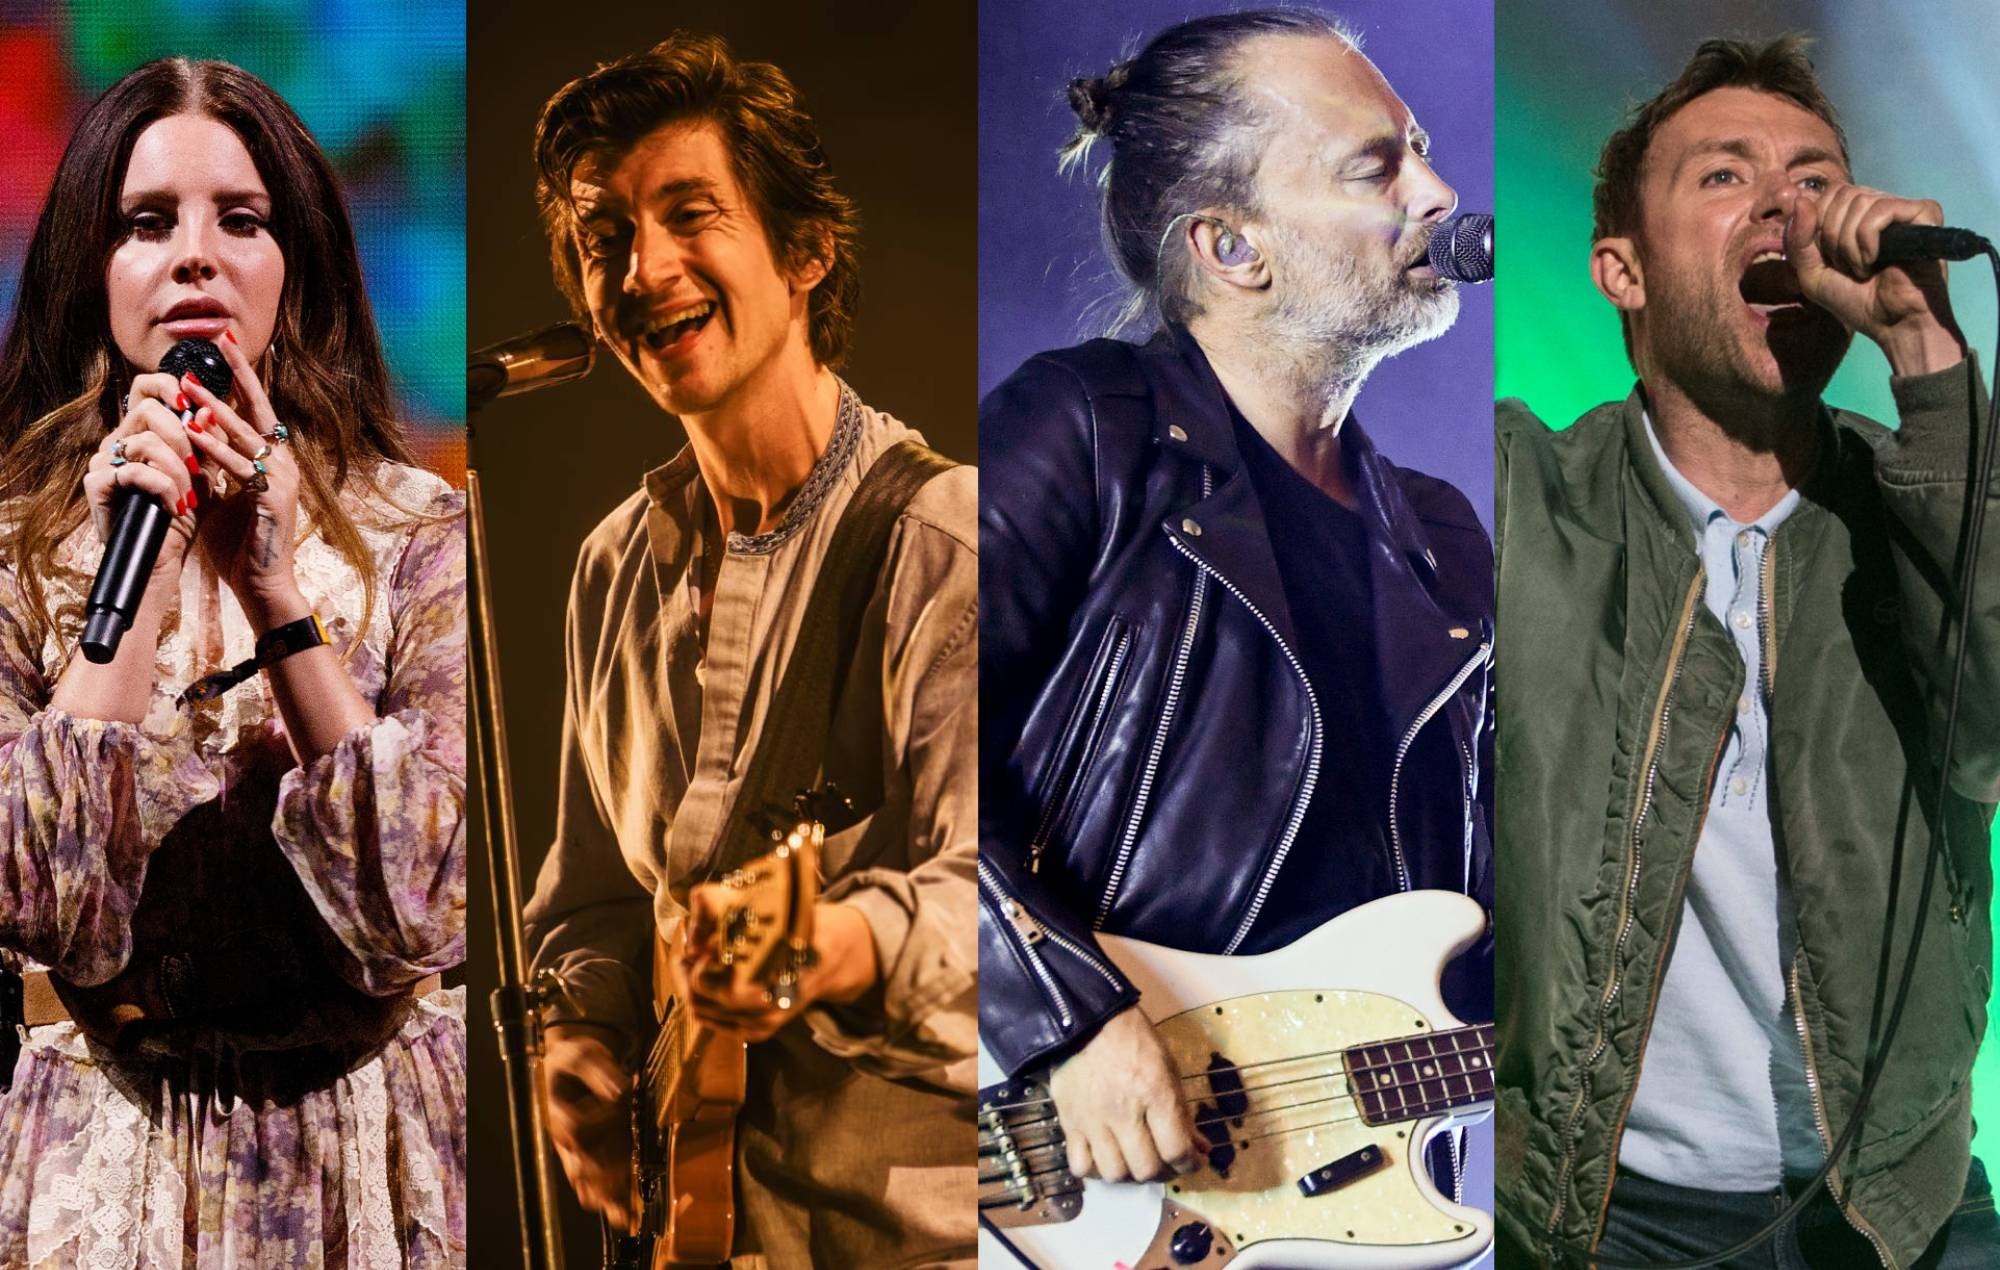 Лана Дель Рей сравнялась с Arctic Monkeys, Radiohead и Blur по количеству альбомов номер один в Великобритании.